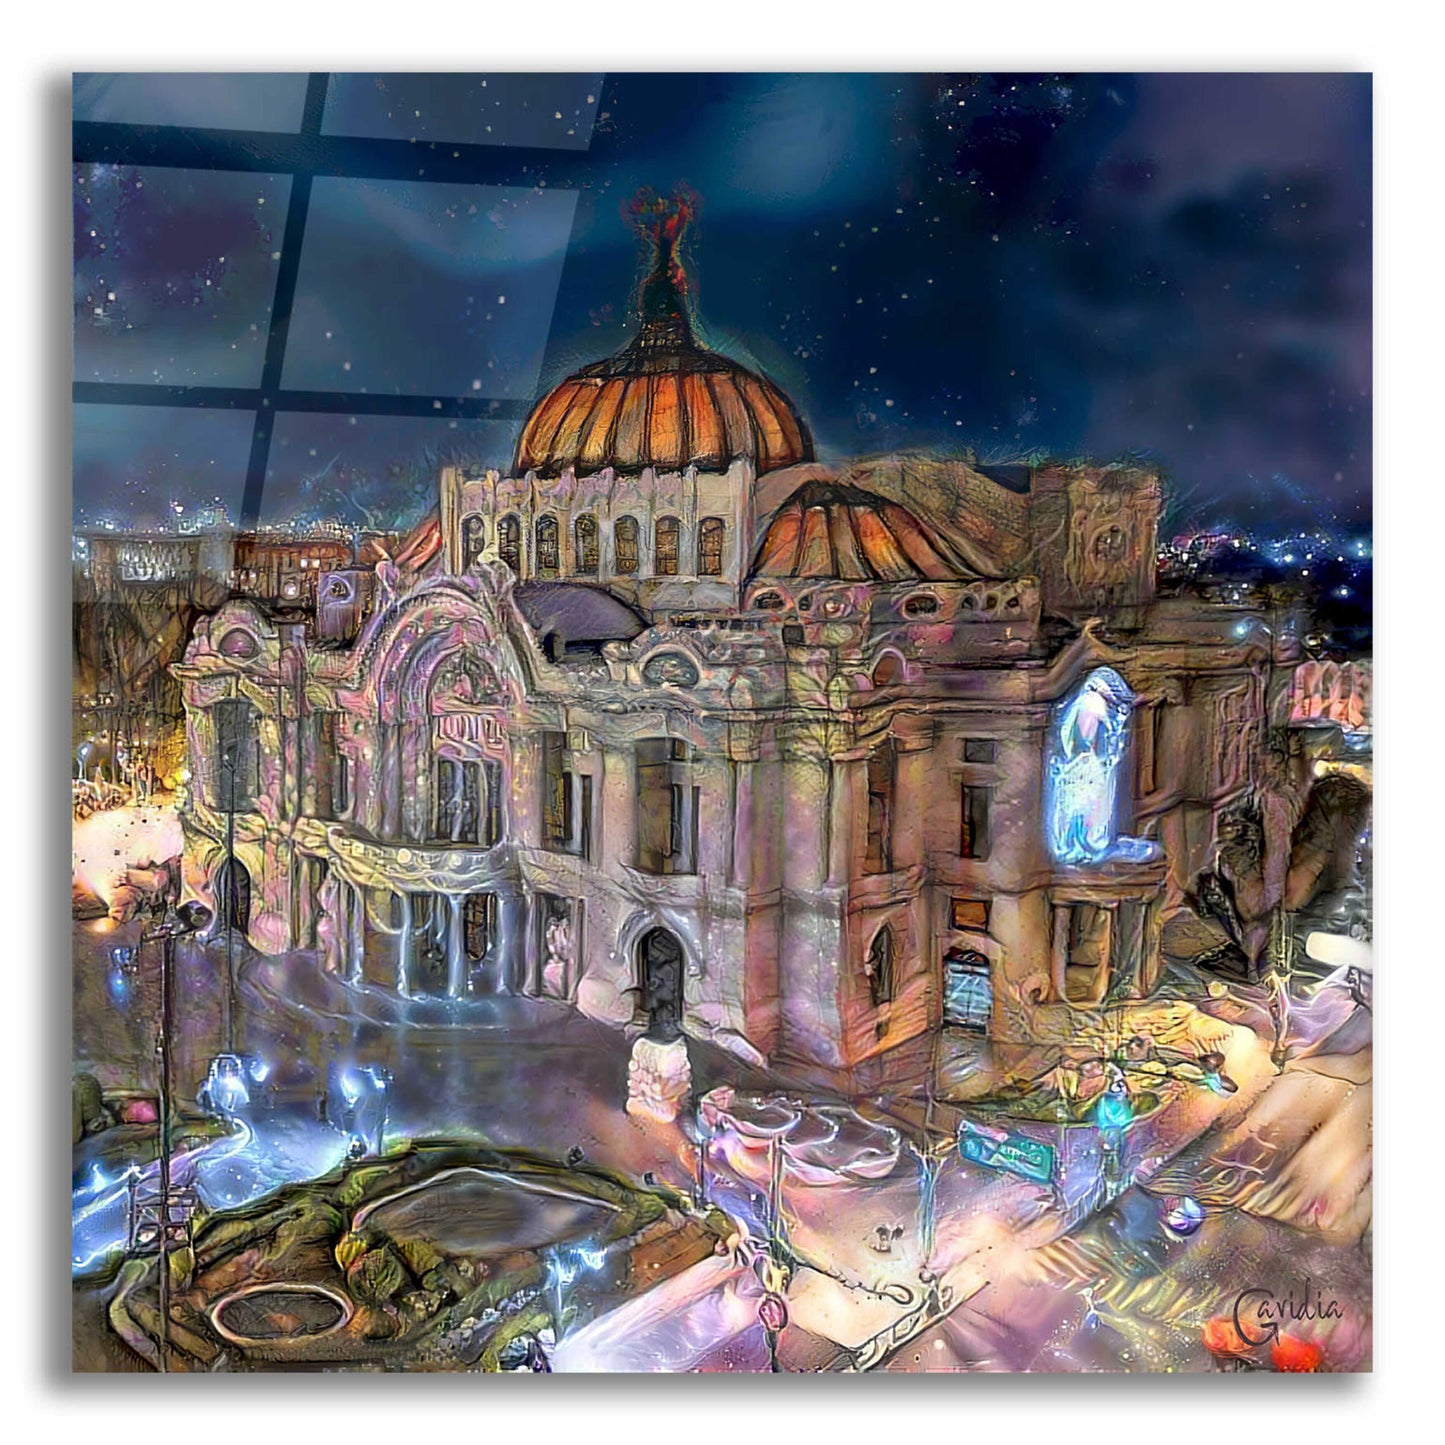 Epic Art 'Mexico City Palace of Fine Arts at night' by Pedro Gavidia, Acrylic Glass Wall Art